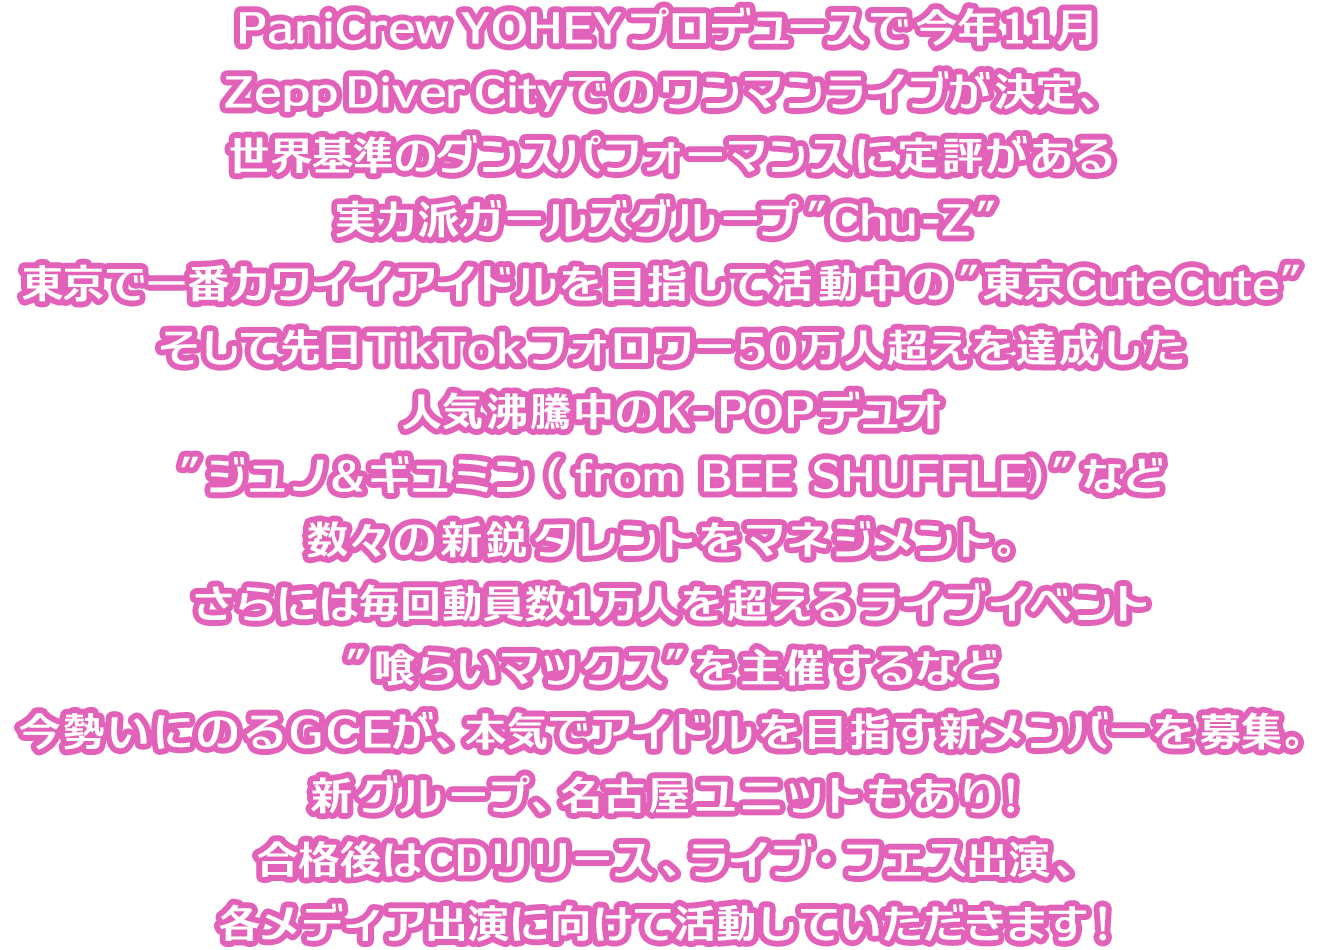 PaniCrew YOHEYプロデュースで今年11月Zepp Diver Cityでのワンマンライブが決定、世界基準のダンスパフォーマンスに定評がある実力派ガールズグループ”Chu-Z”、東京で一番カワイイアイドルを目指して活動中の”東京CuteCute”、そして先日Tik Tokフォロワー50万人超えを達成した人気沸騰中のK-POPデュオ”ジュノ＆ギュミン（ from BEE SHUFFLE）”など数々の新鋭タレントをマネジメント。さらには毎回動員数1万人を超えるライブイベント”喰らいマックス”を主催するなど今勢いにのるGCEが、本気でアイドルを目指す新メンバーを募集。新グループ、名古屋ユニットもあり！合格後はCDリリース、ライブ・フェス出演、各メディア出演に向けて活動していただきます！